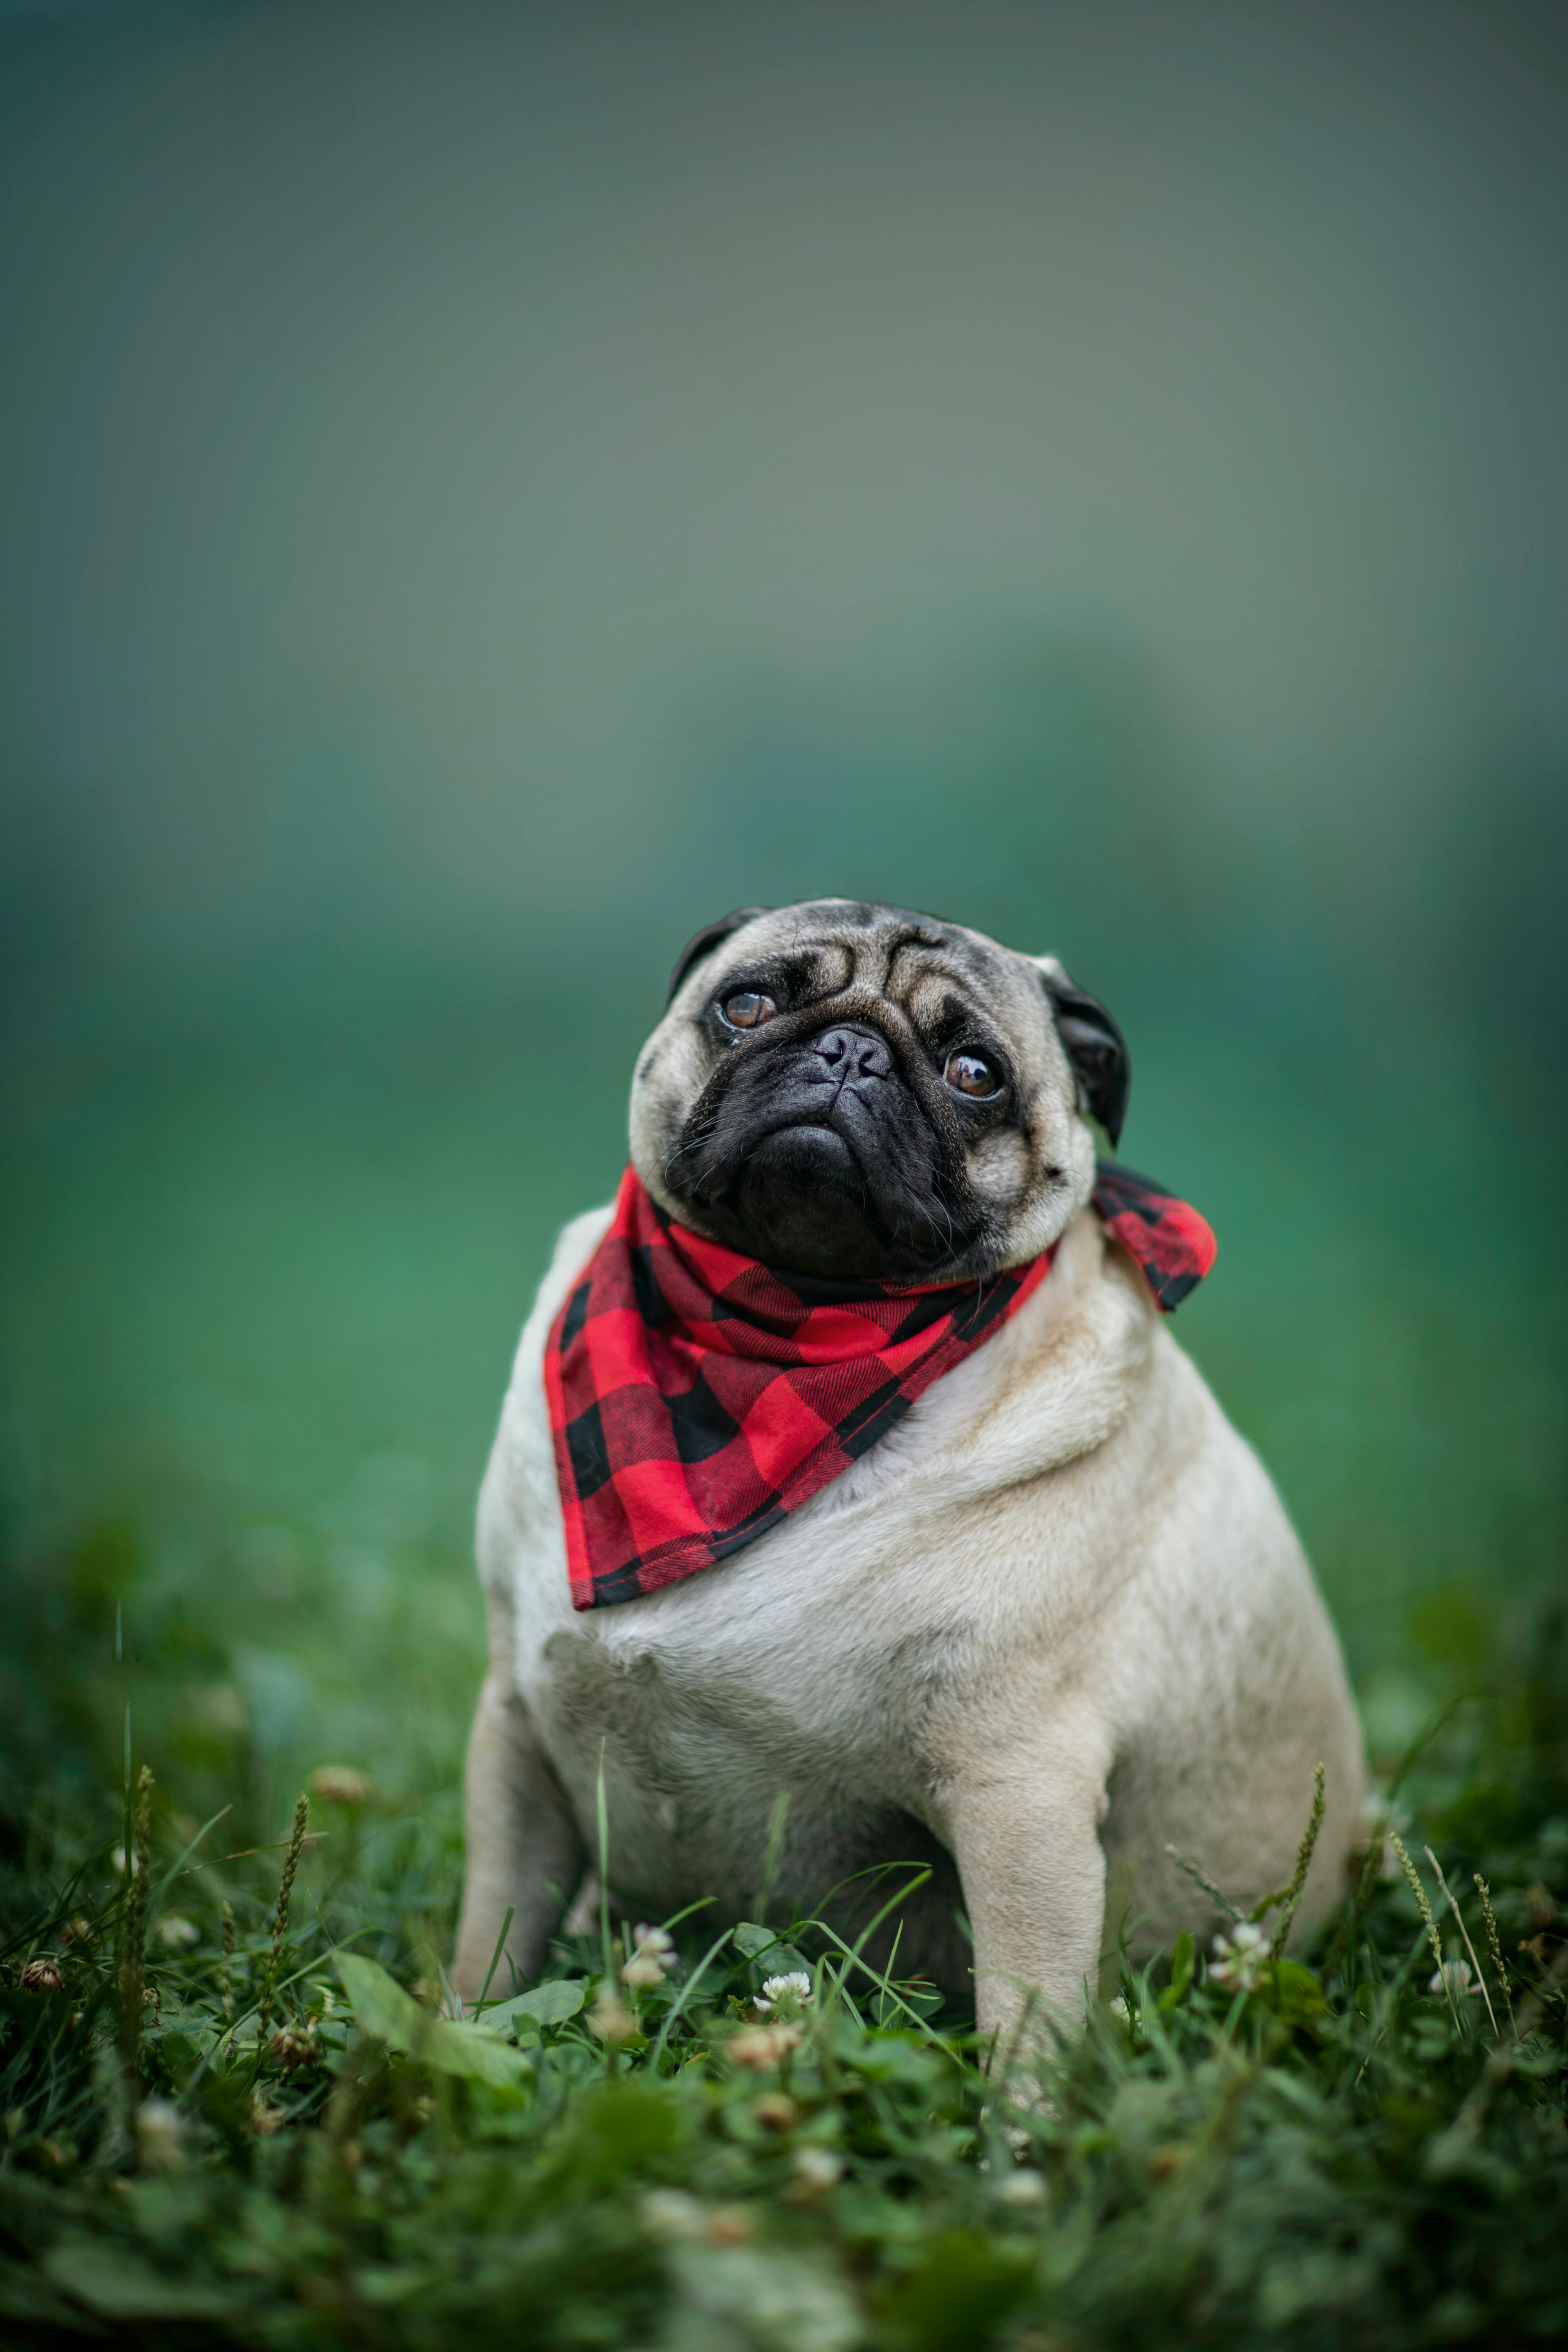 Chú chó Pug đeo khăn quàng kẻ ô sẽ khiến bạn cảm thấy vui vẻ và yêu đời hơn. Hãy tưởng tượng một chú chó đáng yêu lông xù đang đeo khăn quàng ô vui đùa trong khu vườn tươi đẹp. Hãy xem những hình ảnh này để tìm kiếm sự thư giãn và hạnh phúc.